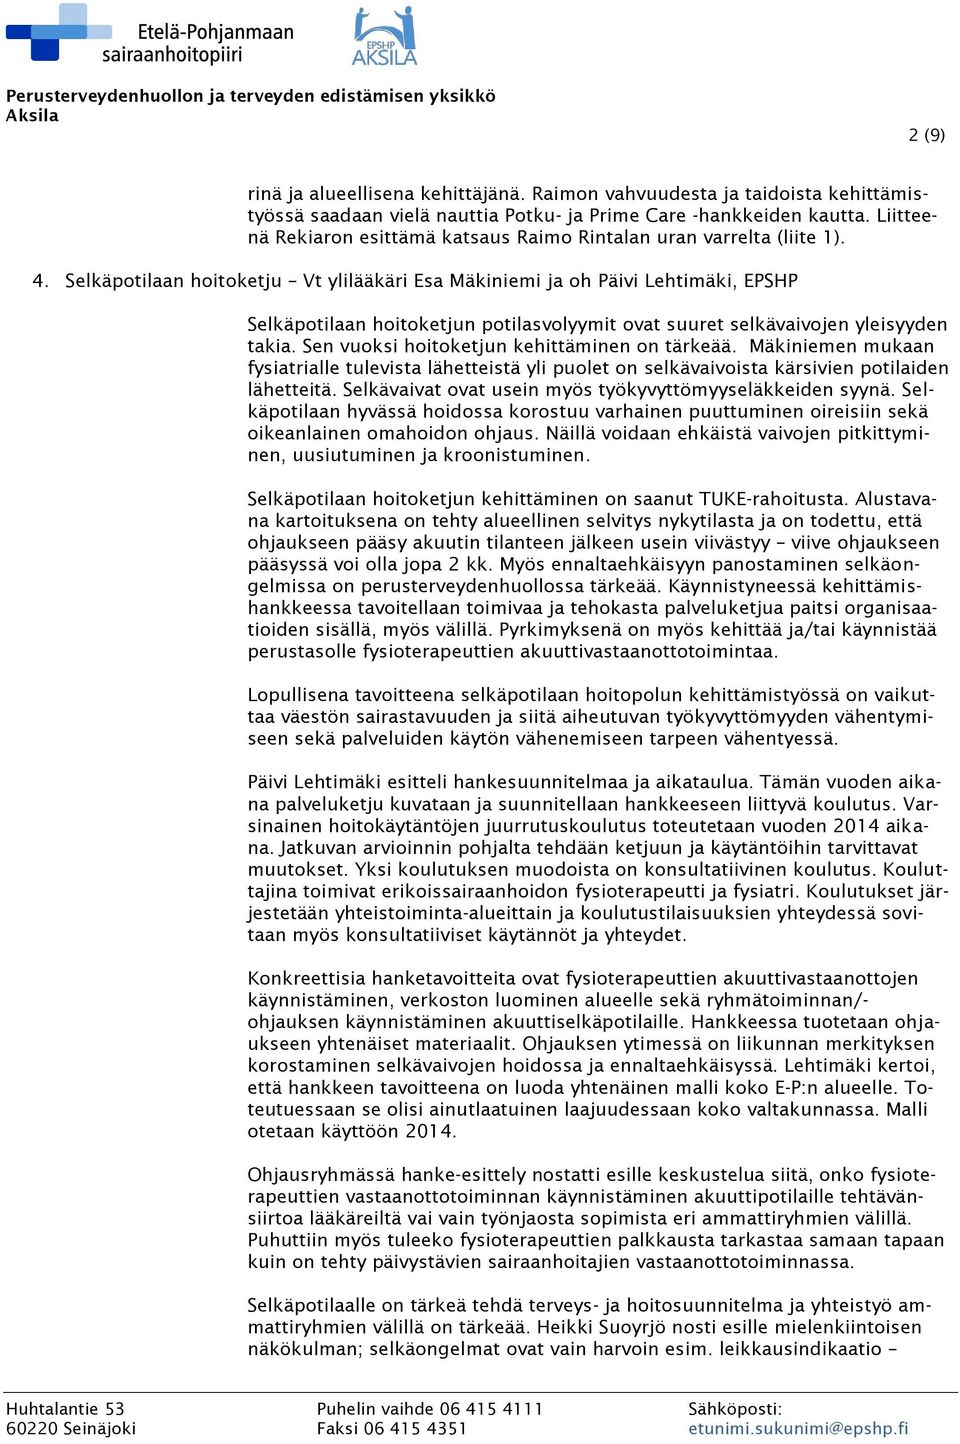 Selkäpotilaan hoitoketju Vt ylilääkäri Esa Mäkiniemi ja oh Päivi Lehtimäki, EPSHP Selkäpotilaan hoitoketjun potilasvolyymit ovat suuret selkävaivojen yleisyyden takia.